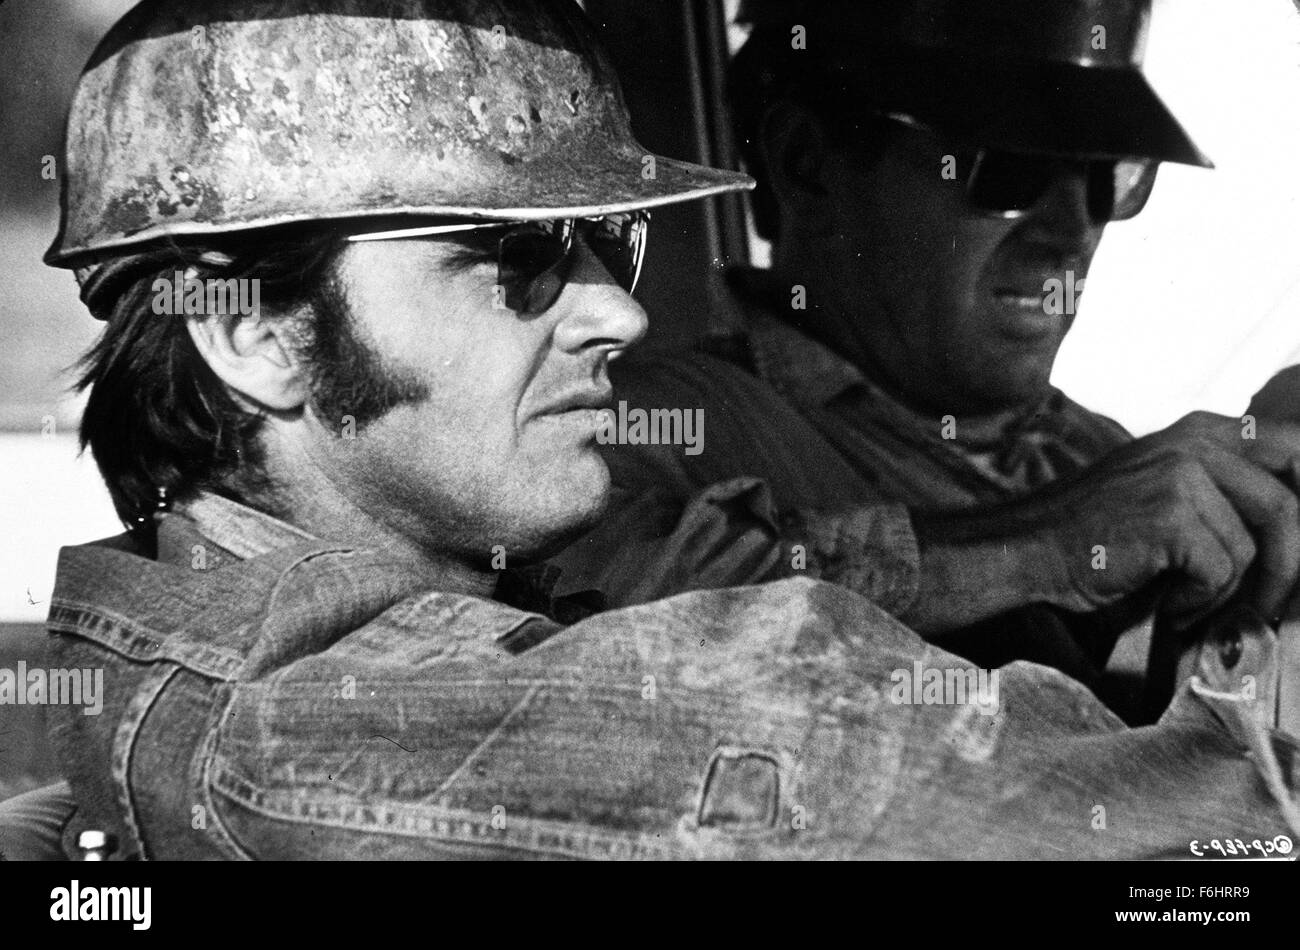 1970, il titolo del film: Cinque pezzi facili, Direttore: BOB RAFELSON, nella foto: 1970, HARD HAT, Jack Nicholson, BOB RAFELSON, LAVORATORE, Oil Rig, minatore, duro, raffreddare, occhiali da sole, il passeggero lato BURNS, auto. (Credito Immagine: SNAP) Foto Stock